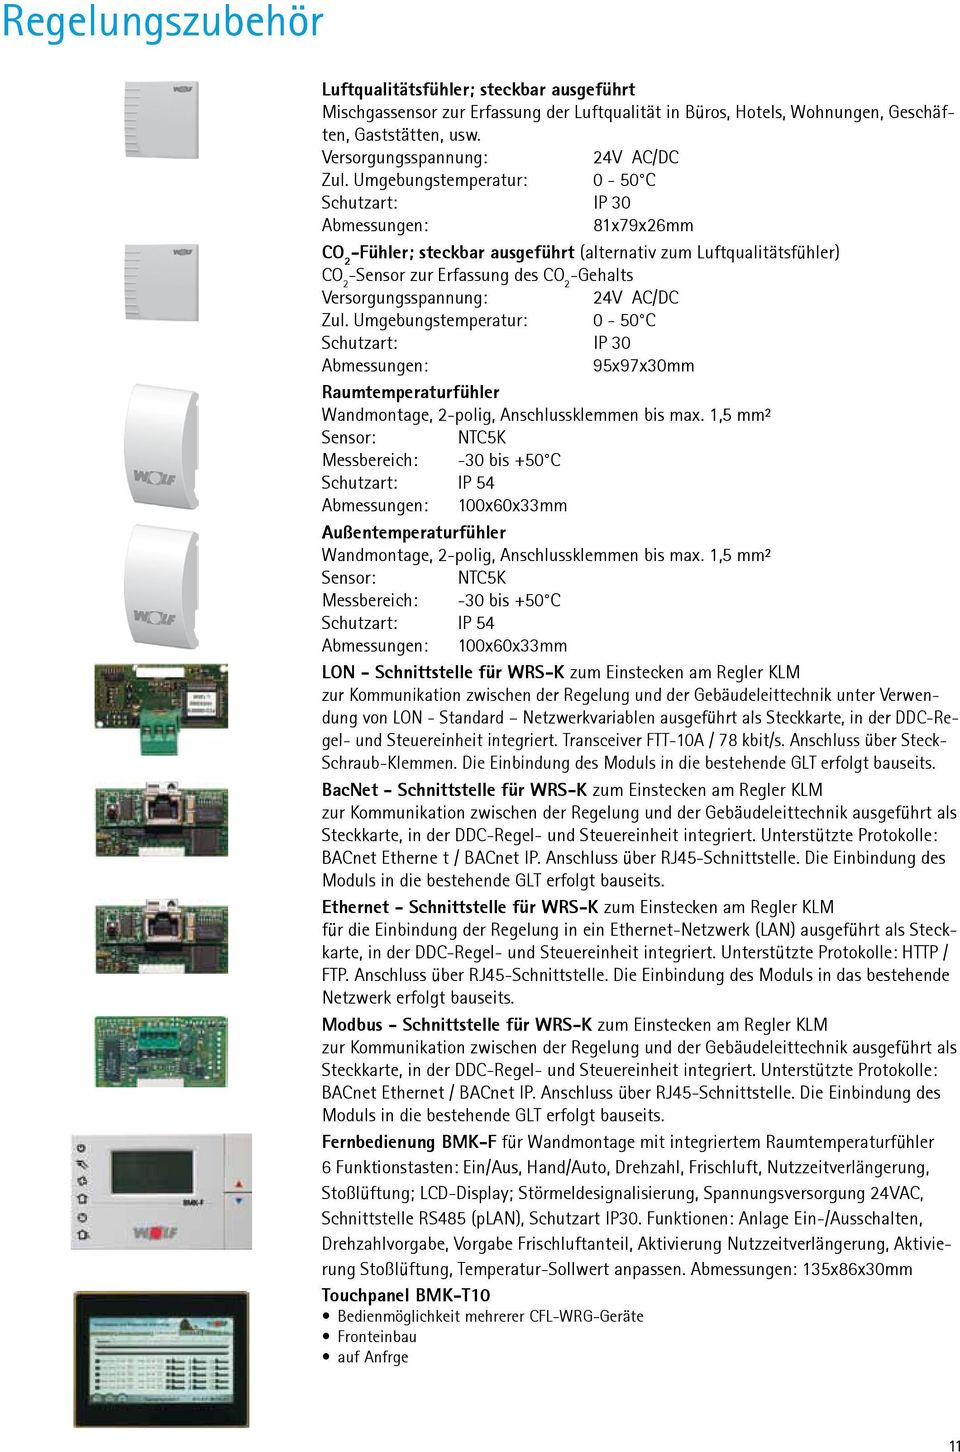 Versorgungsspannung: 24V AC/DC Zul. Umgebungstemperatur: 0-50 C Schutzart: IP 30 Abmessungen: 95x97x30mm Raumtemperaturfühler Wandmontage, 2-polig, Anschlussklemmen bis max.